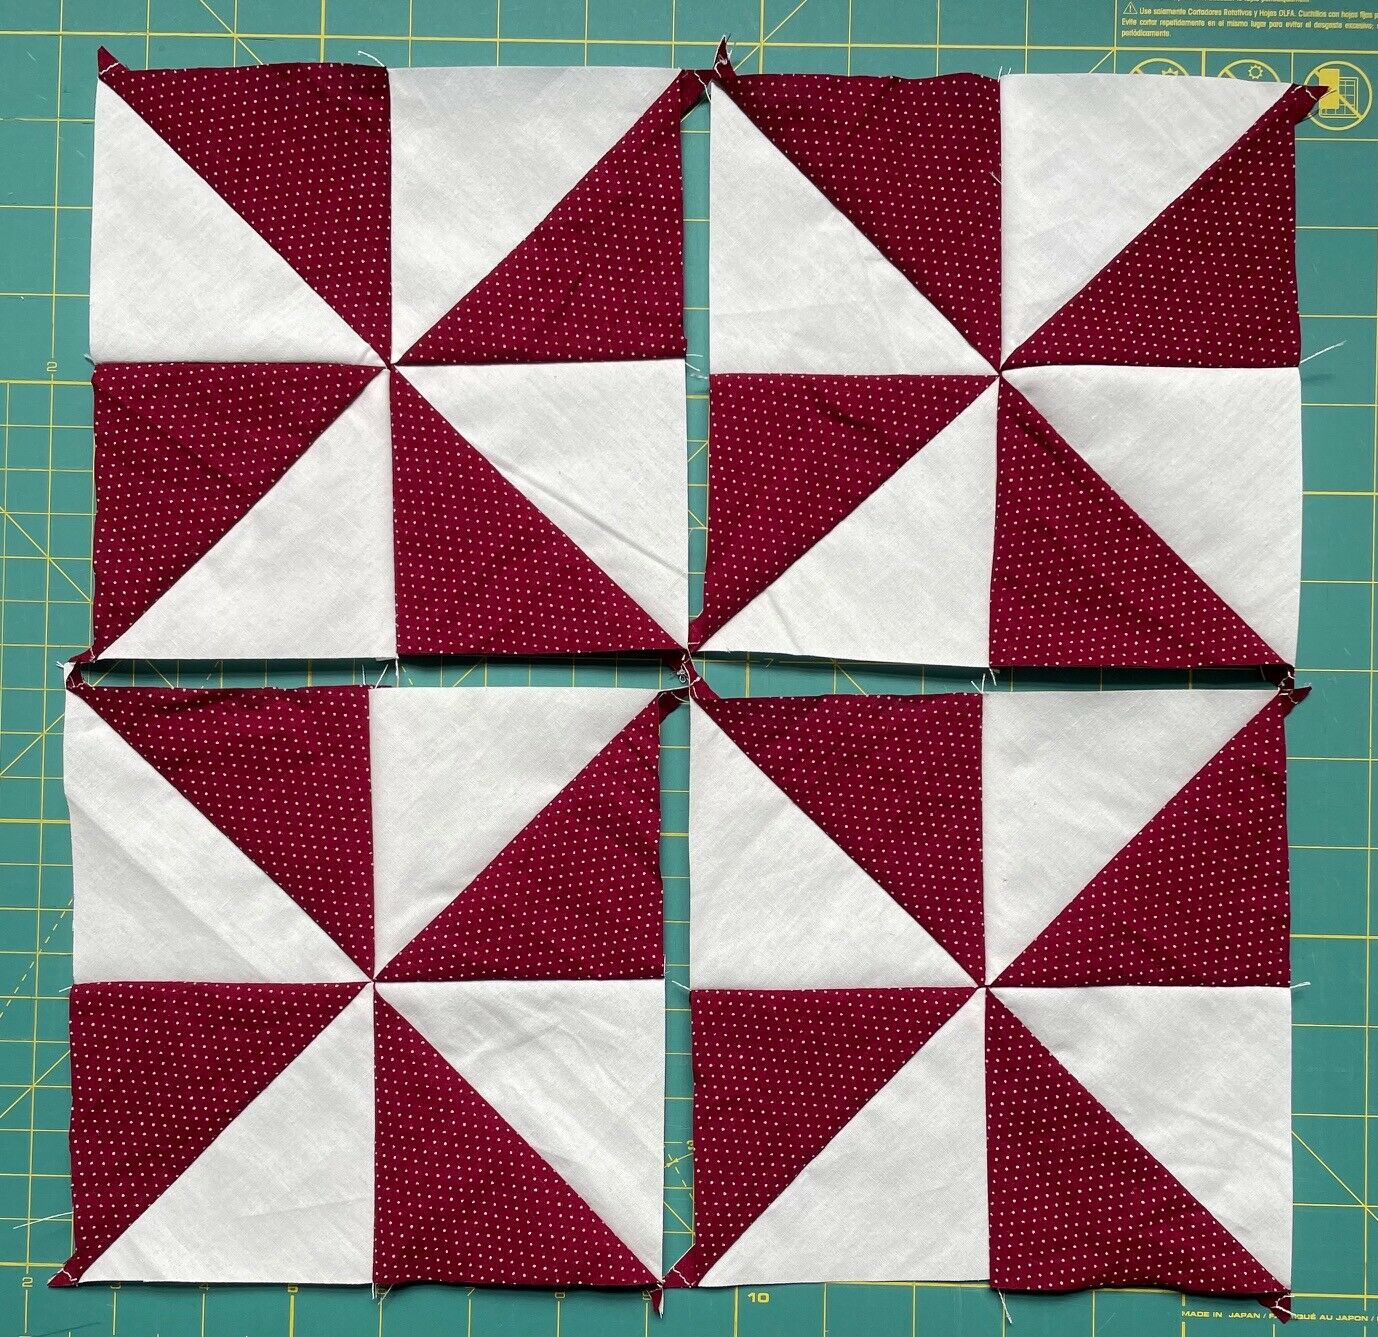 Set Of 12 Cotton Patchwork Quilt Blocks, 6.5" Sq, Dark Red/maroon, Pinwheel